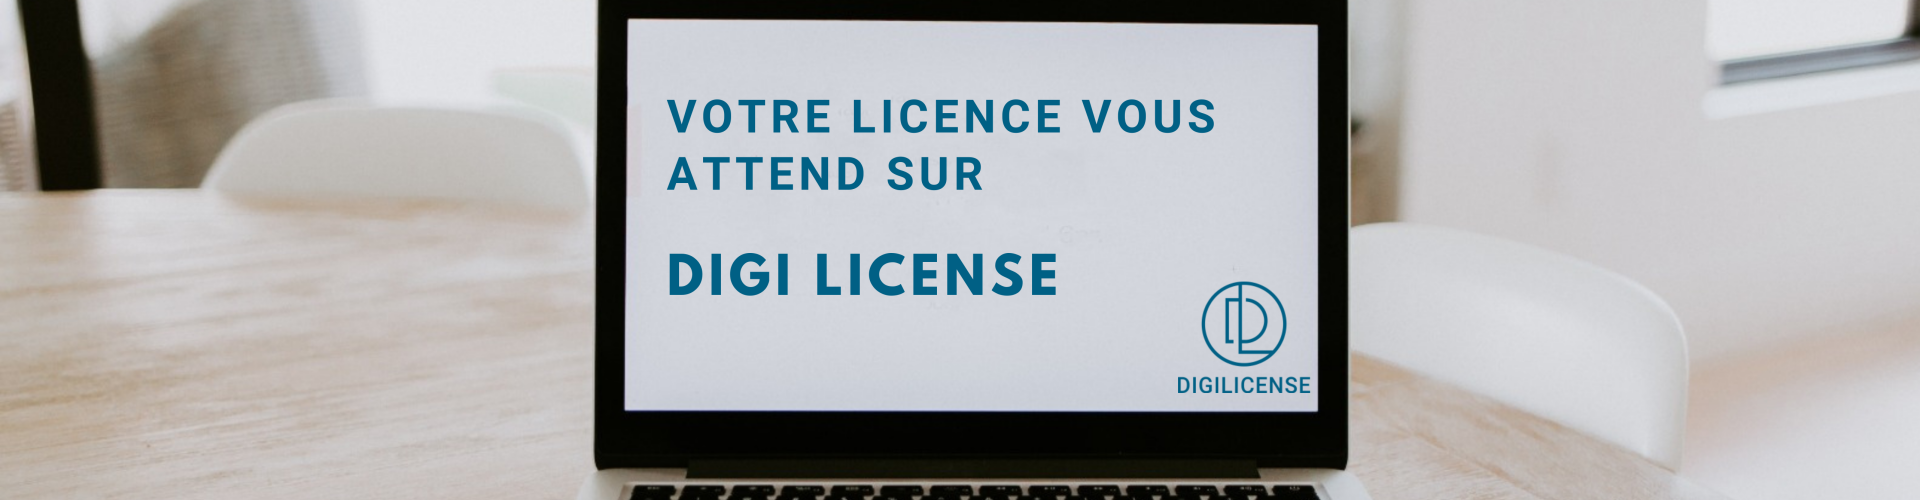 Bannière Digi License